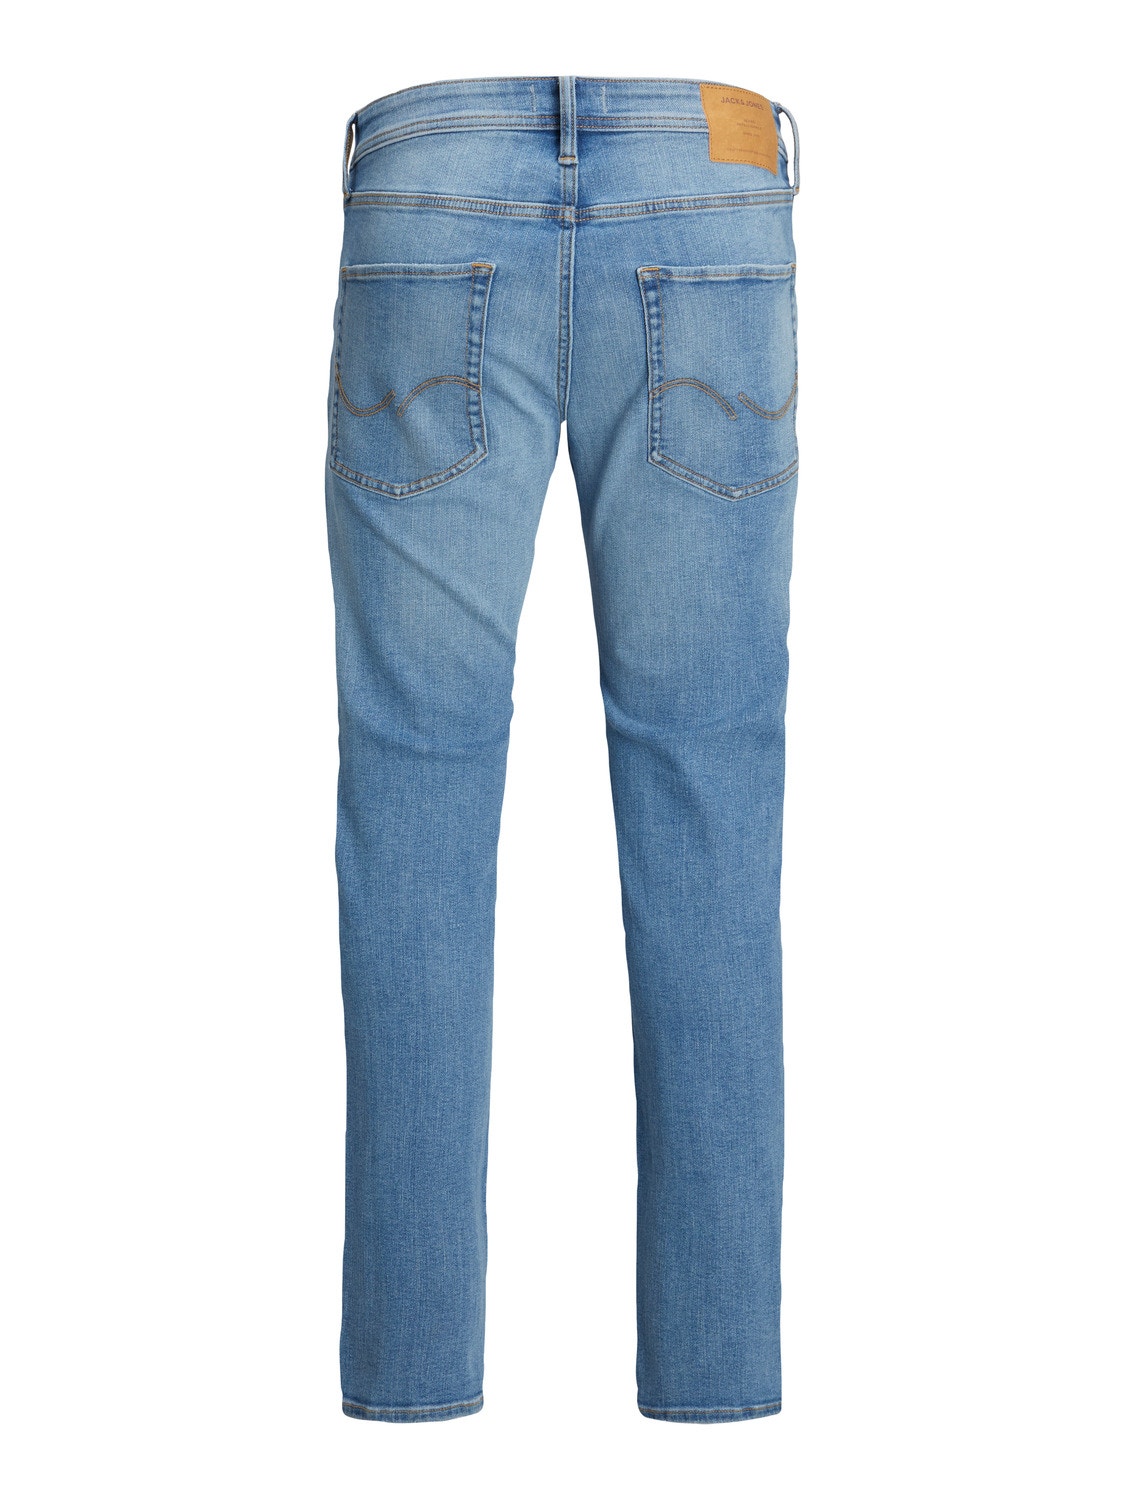 Jack & Jones Plus Size JJIMIKE JJORIGINAL AM 783 PLS Jeans Tapered Fit -Blue Denim - 12235400